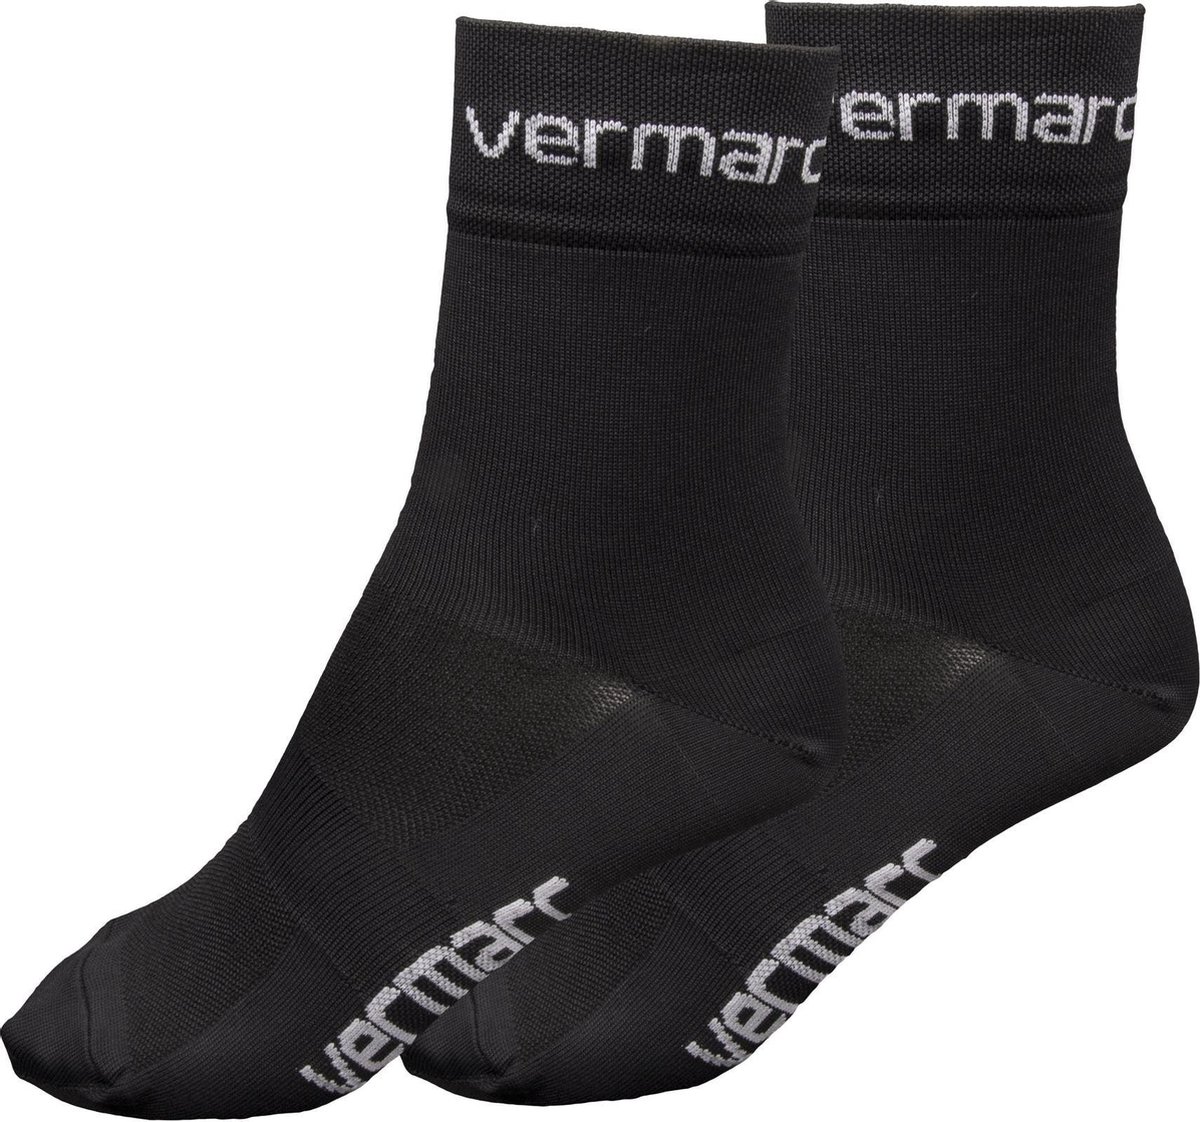 Vermarc Sports Fietssokken Vermarc Vs19 Skinnlife Zwart - Maat: S/M, Kleur: Zwart